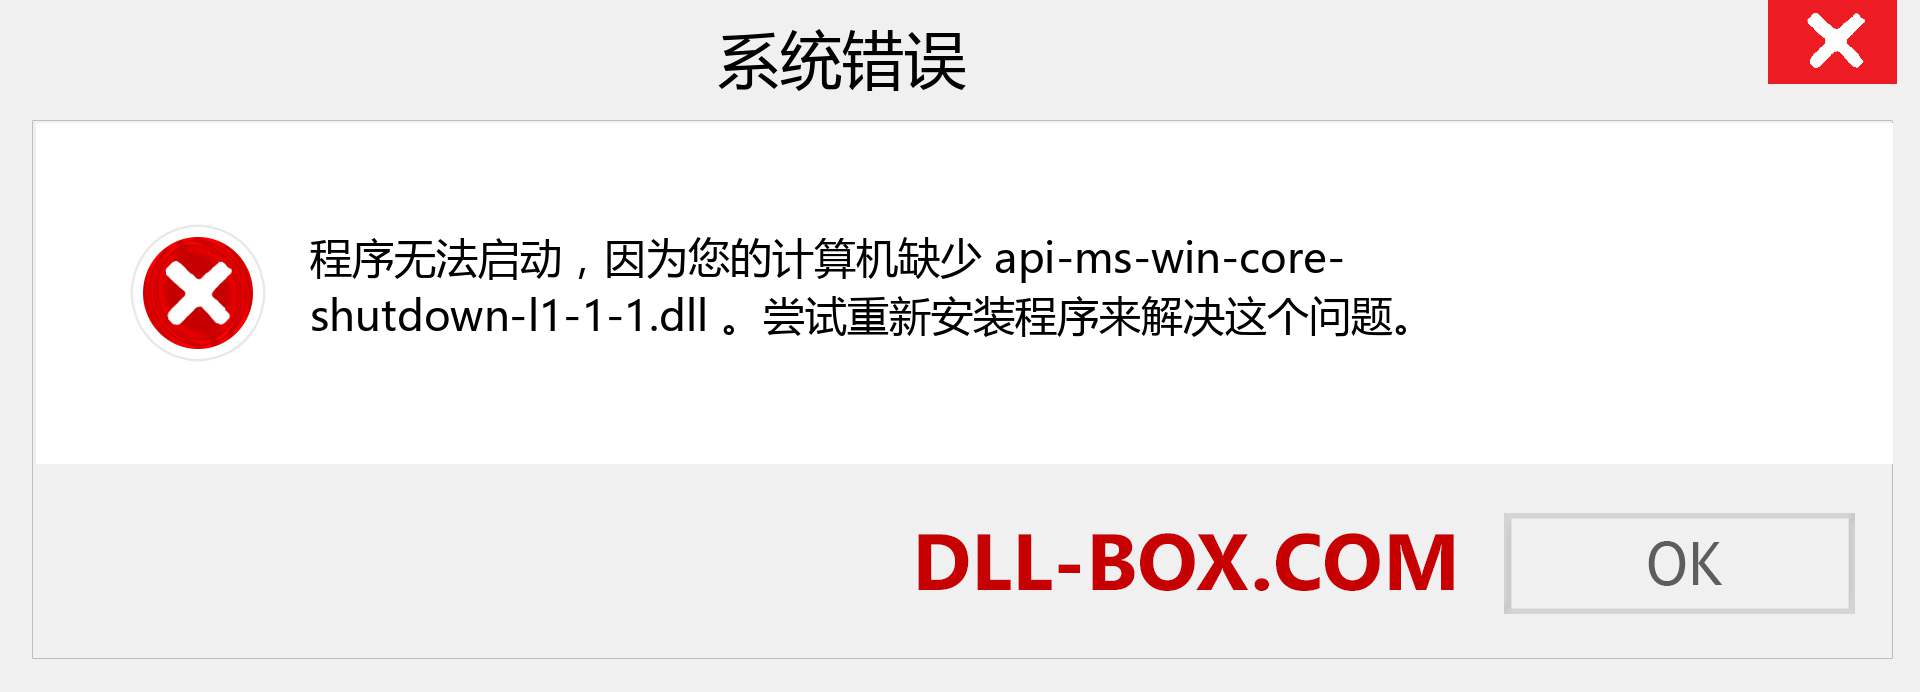 api-ms-win-core-shutdown-l1-1-1.dll 文件丢失？。 适用于 Windows 7、8、10 的下载 - 修复 Windows、照片、图像上的 api-ms-win-core-shutdown-l1-1-1 dll 丢失错误